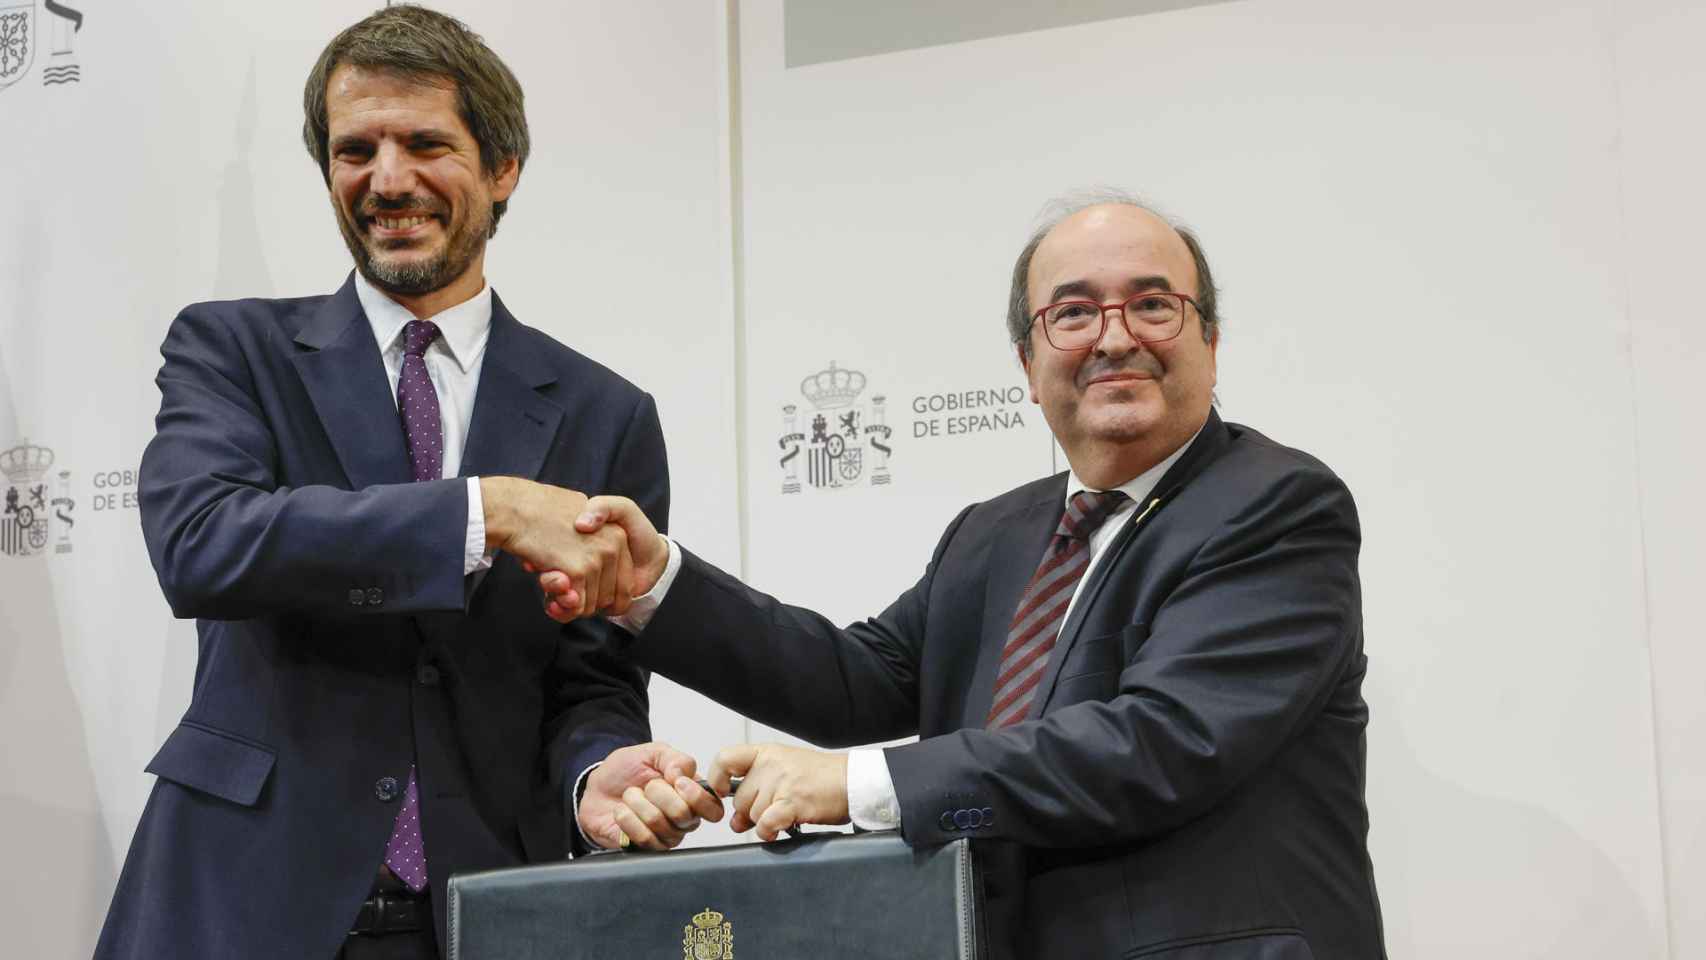 El nuevo ministro de Cultura, Ernest Urtasun (i) recibe de manos de su antecesor en el cargo, Miquel Iceta, la cartera del Ministerio de Cultura, el 21 de noviembre en Madrid. Foto: EFE/ Zipi